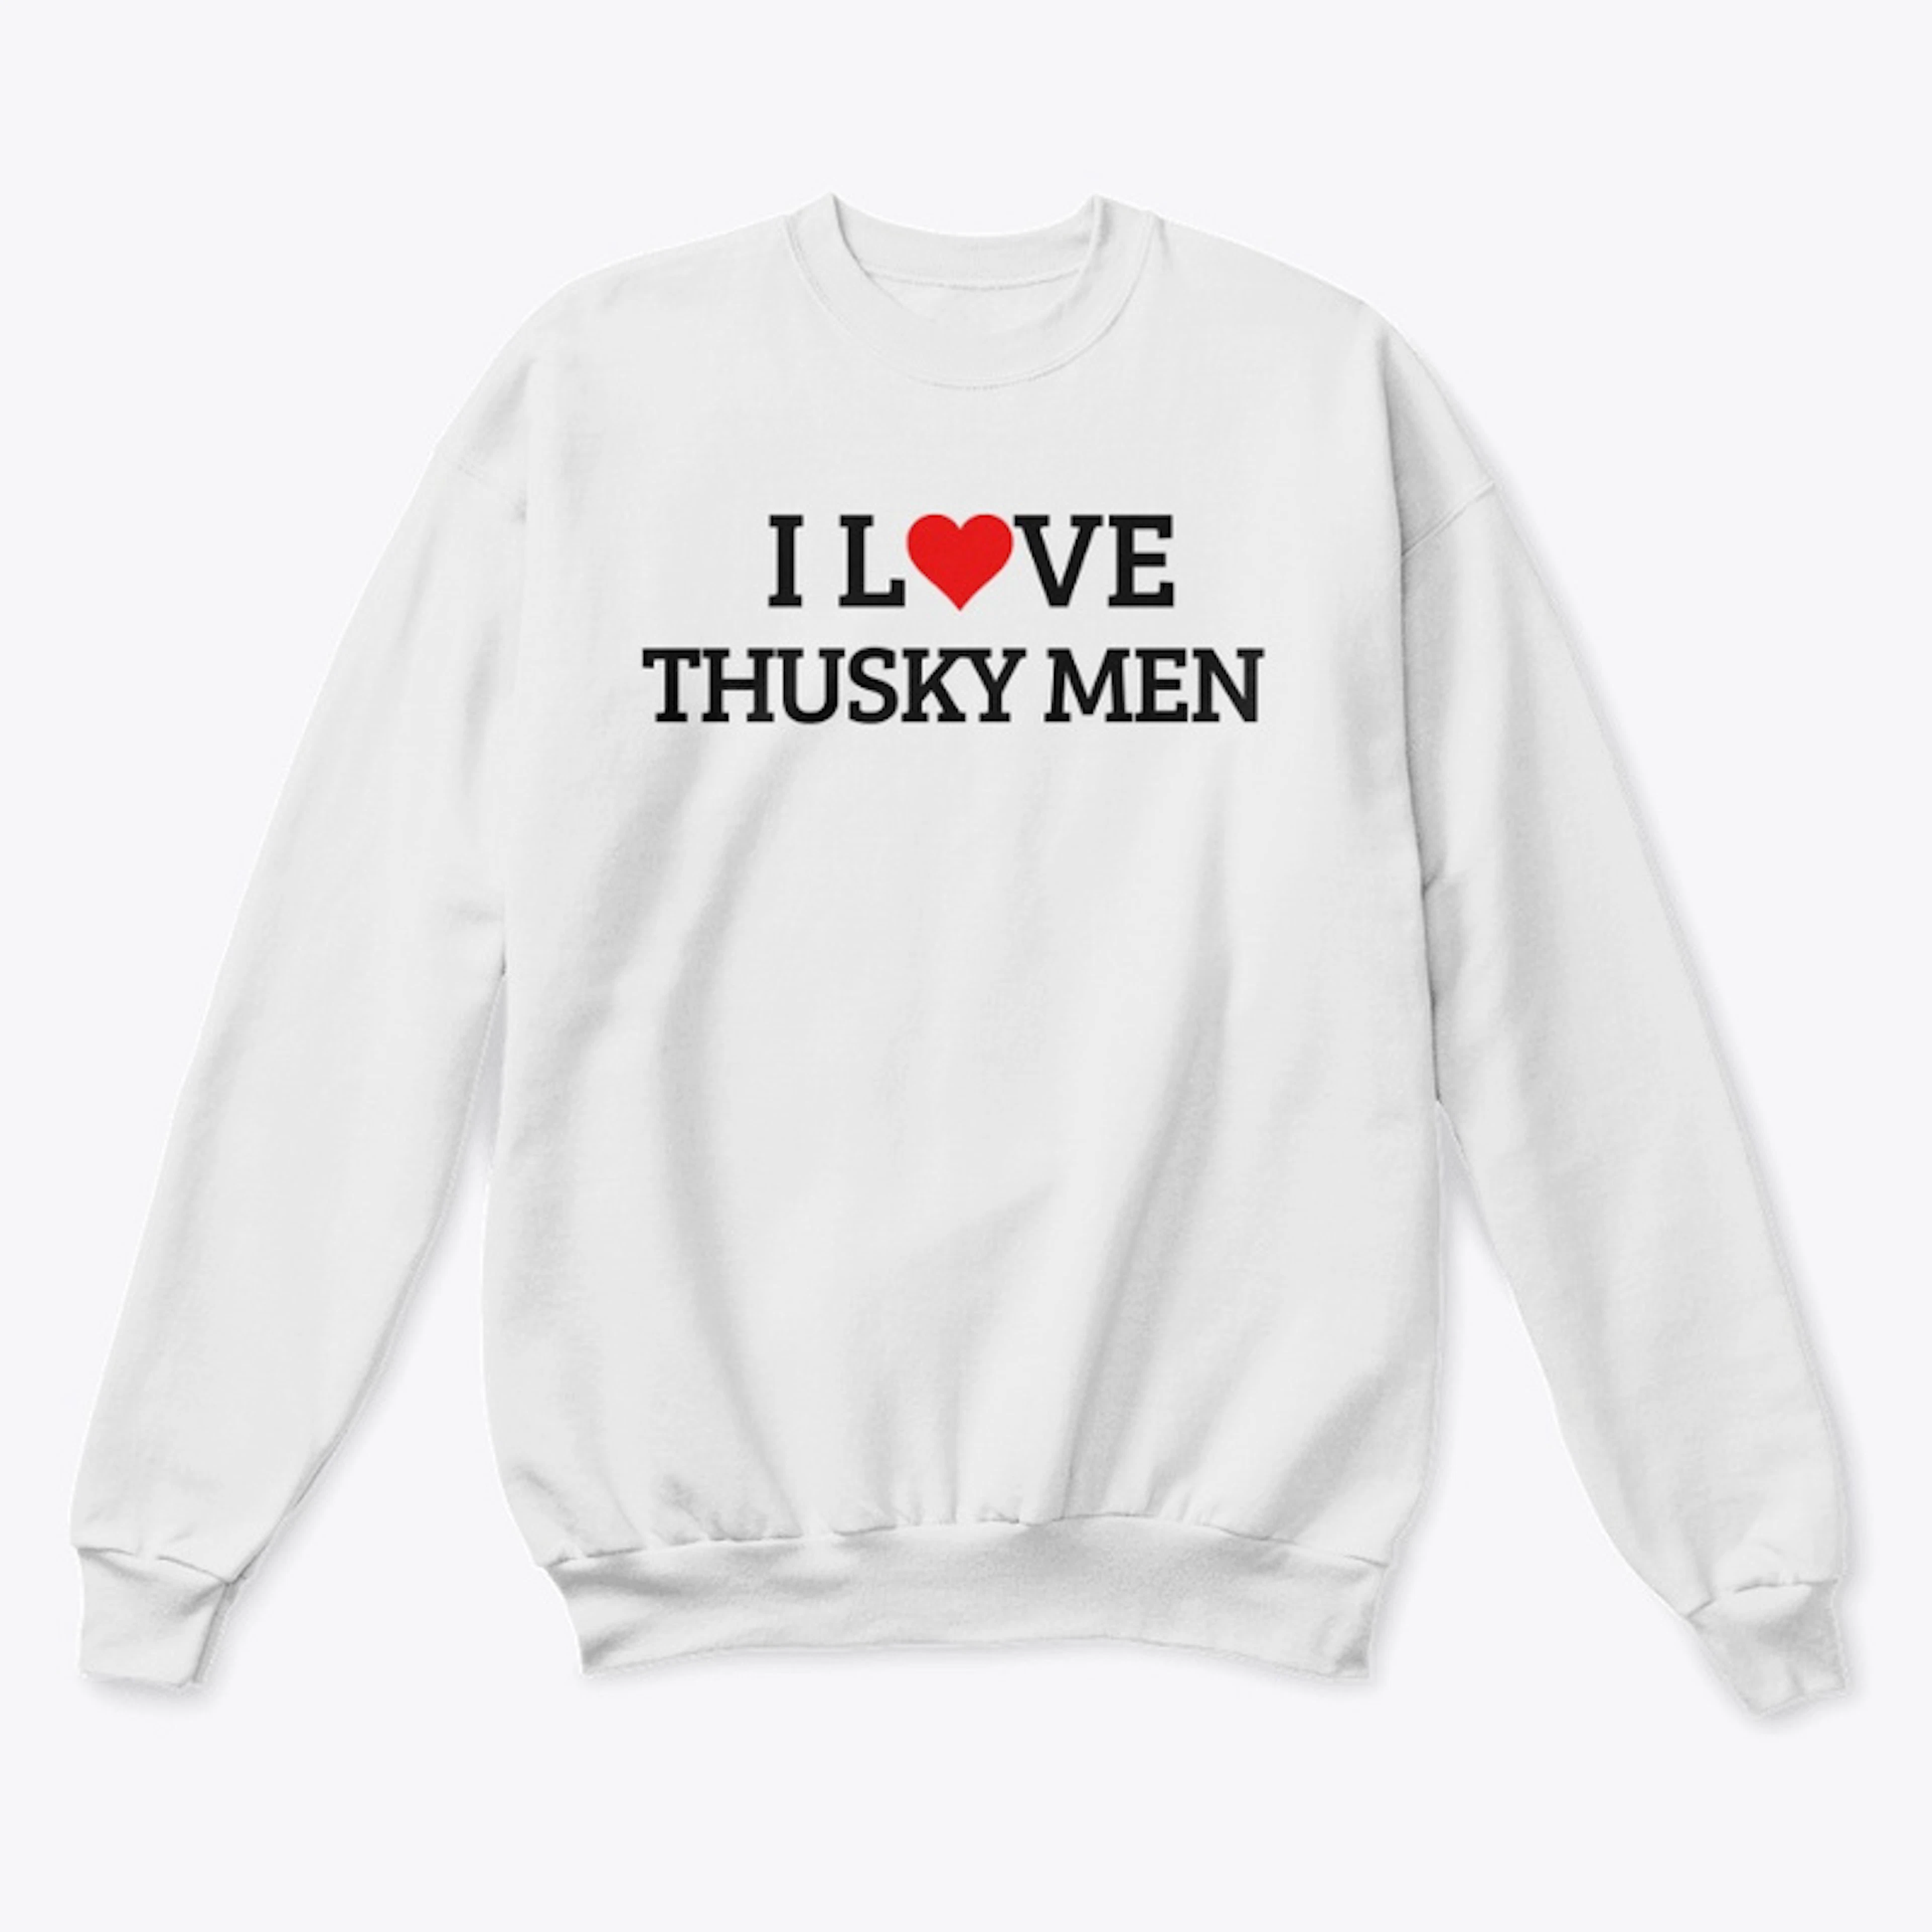 I Love Thusky men